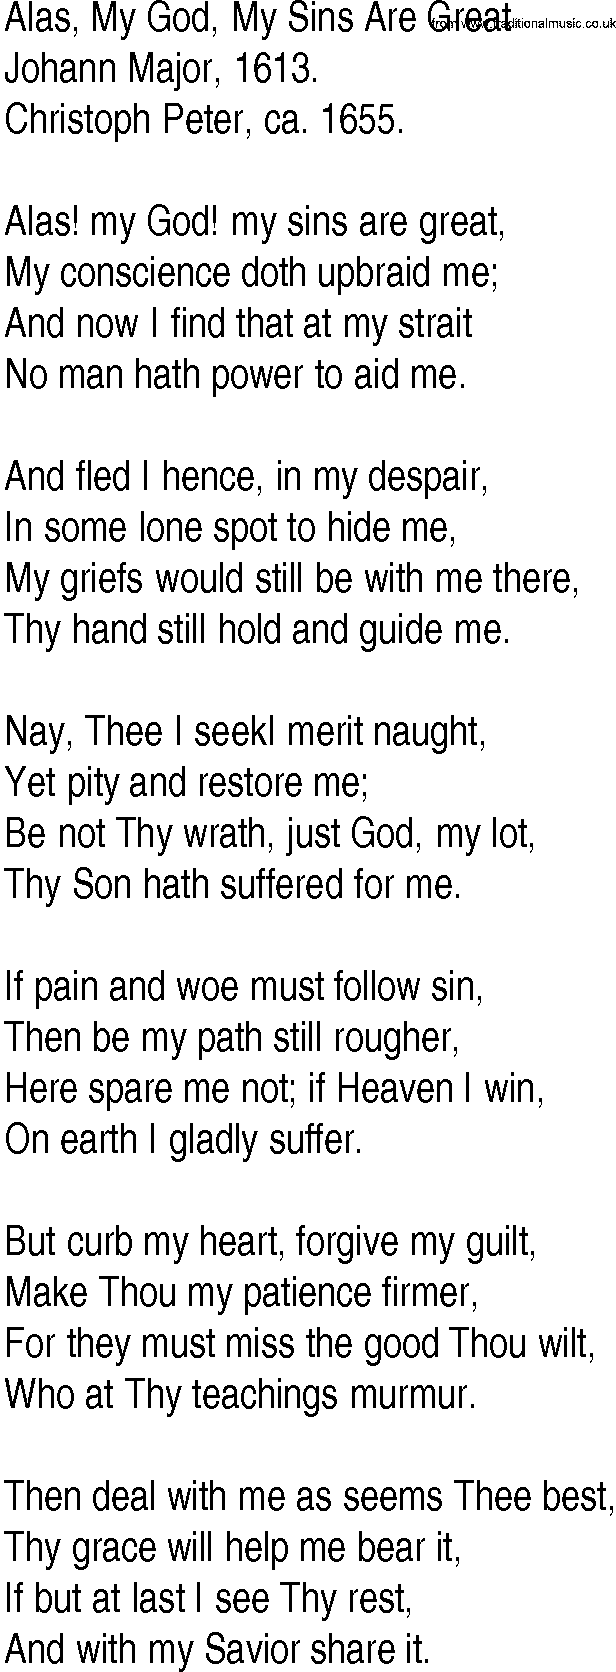 Hymn and Gospel Song: Alas, My God, My Sins Are Great by Johann Major lyrics